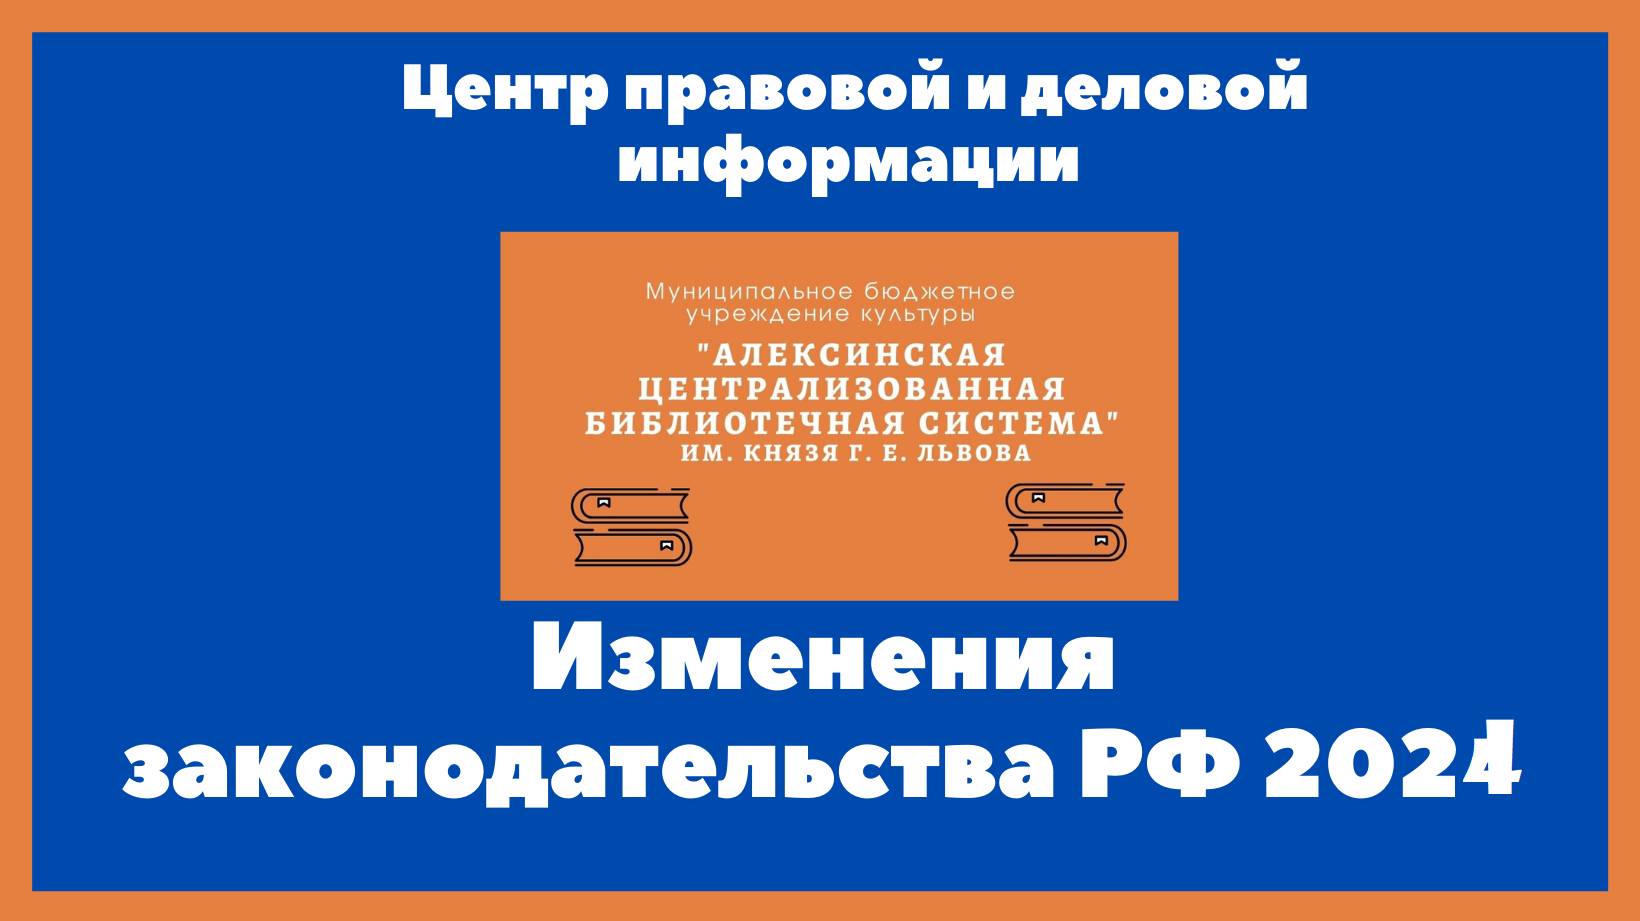 #Центр_правовой_и_деловой_информацииЦГБ #ЦПДИЦГБ Изменения  в  российском  законодательстве  с  июля